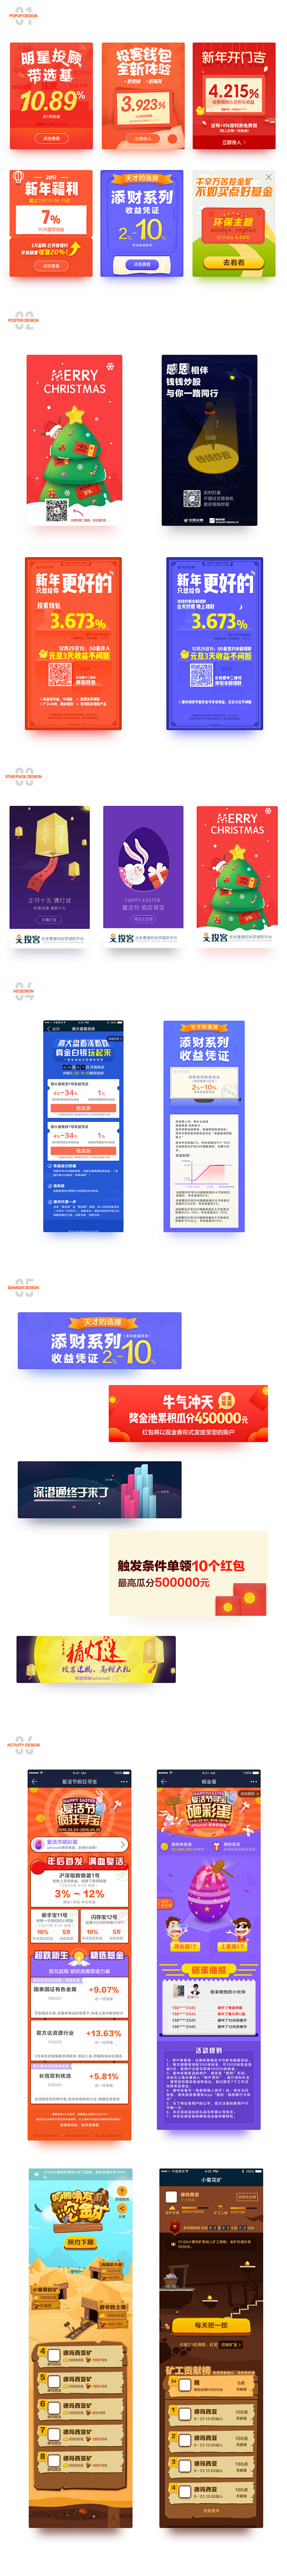 2016运营设计总结-UI中国-专业界面...